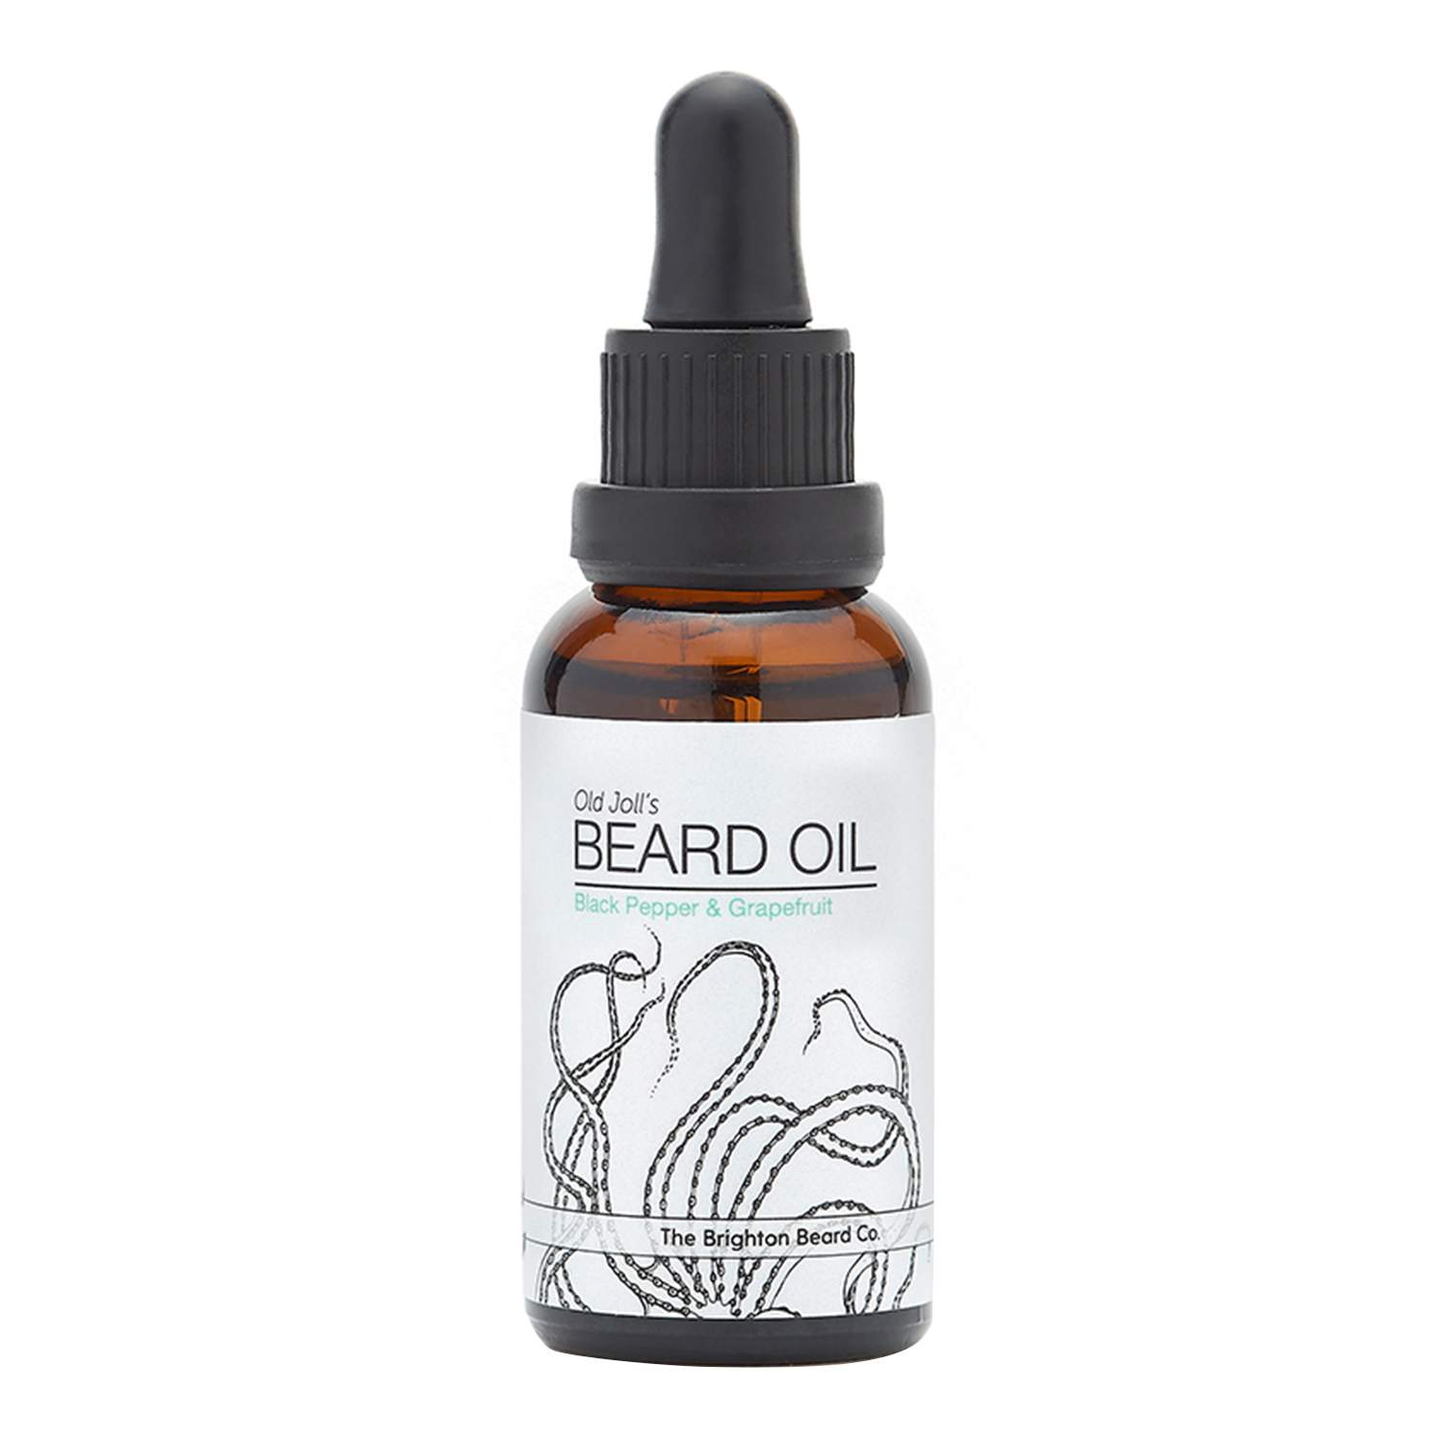 The Brighton Beard Co Old Joll’s Black Pepper & Grapefruit Beard Oil